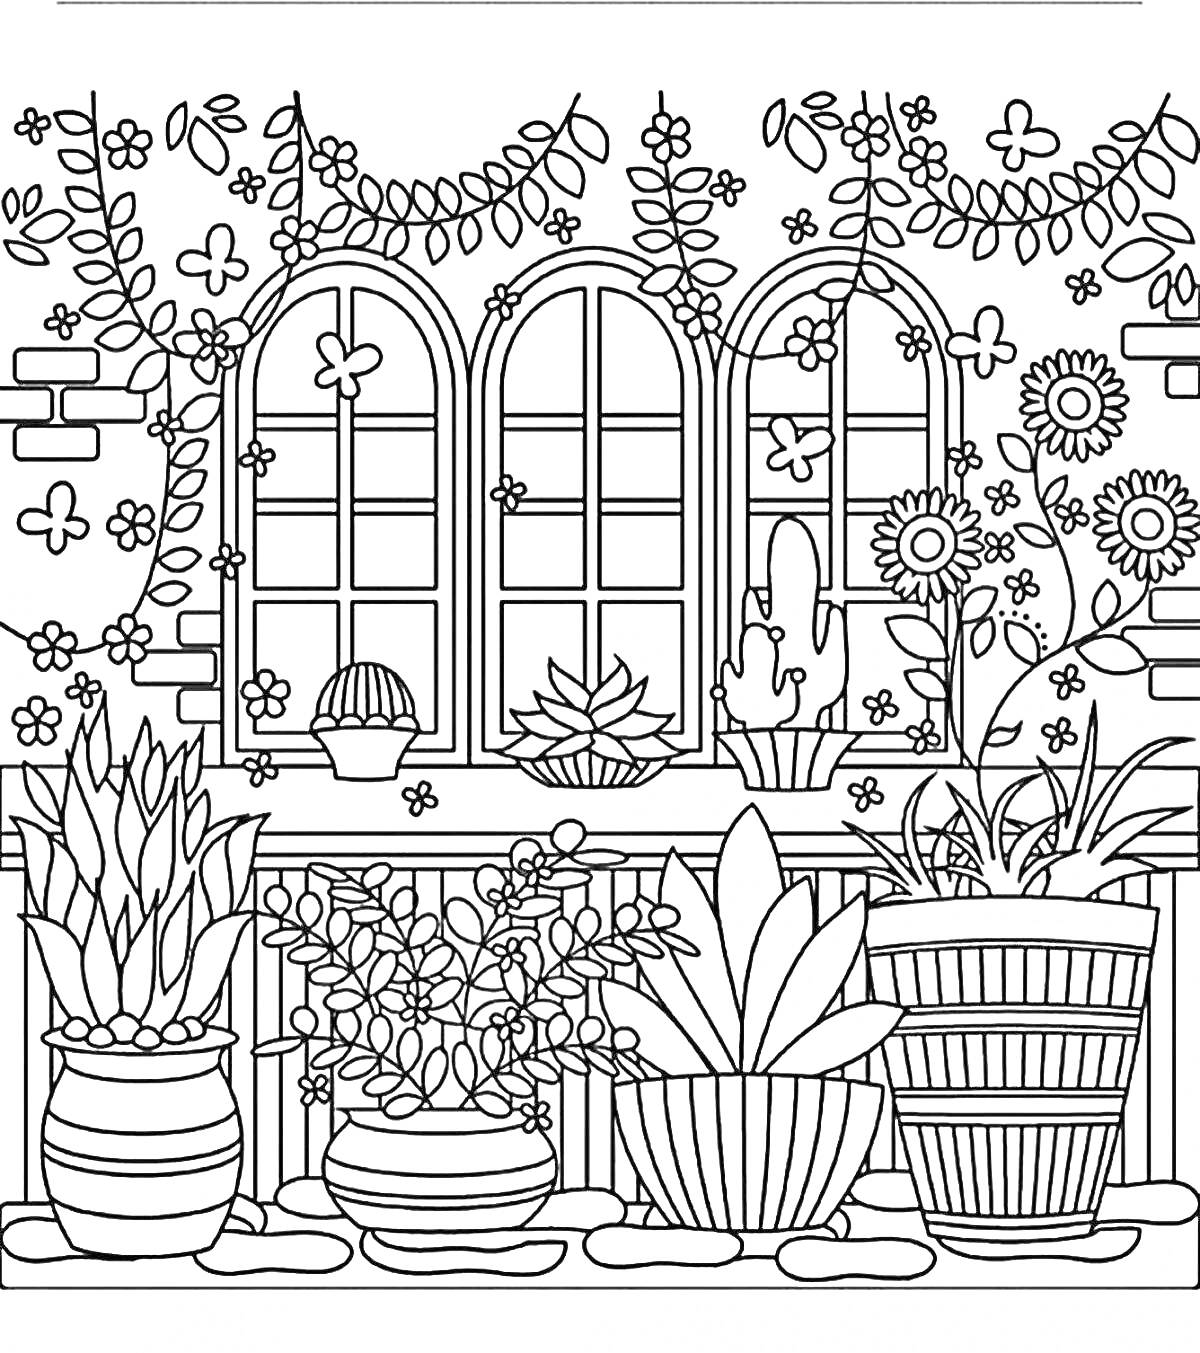 Раскраска Цветочный сад с разнообразными растениями на фоне окна с тремя арками и кирпичной стеной